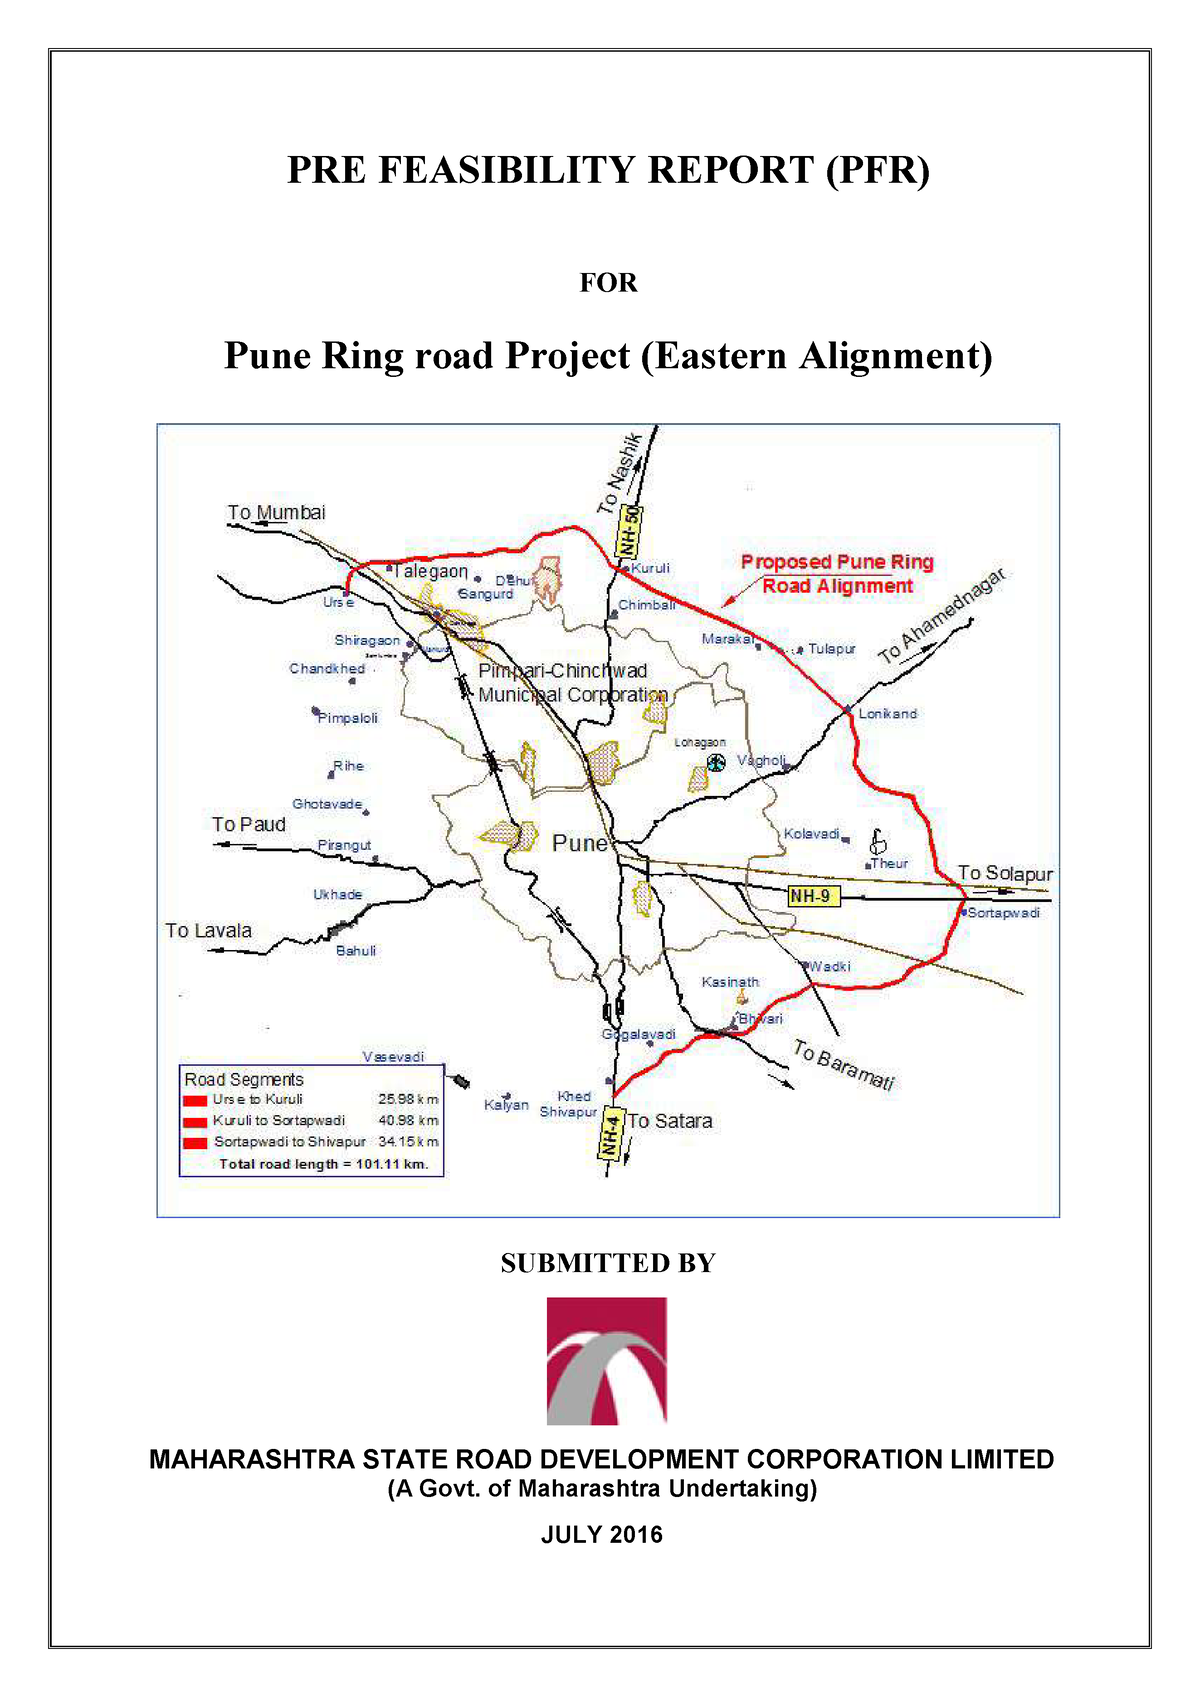 Pune ring road : मुख्यमंत्र्यांनी निधीचं वाटप केल्यानं रिंगरोड प्रकल्प  मार्गी! 2 महिन्यांत काम सुरू होण्याची एमएसआरडीसीला अपेक्षा - Marathi News |  MSRDC ...